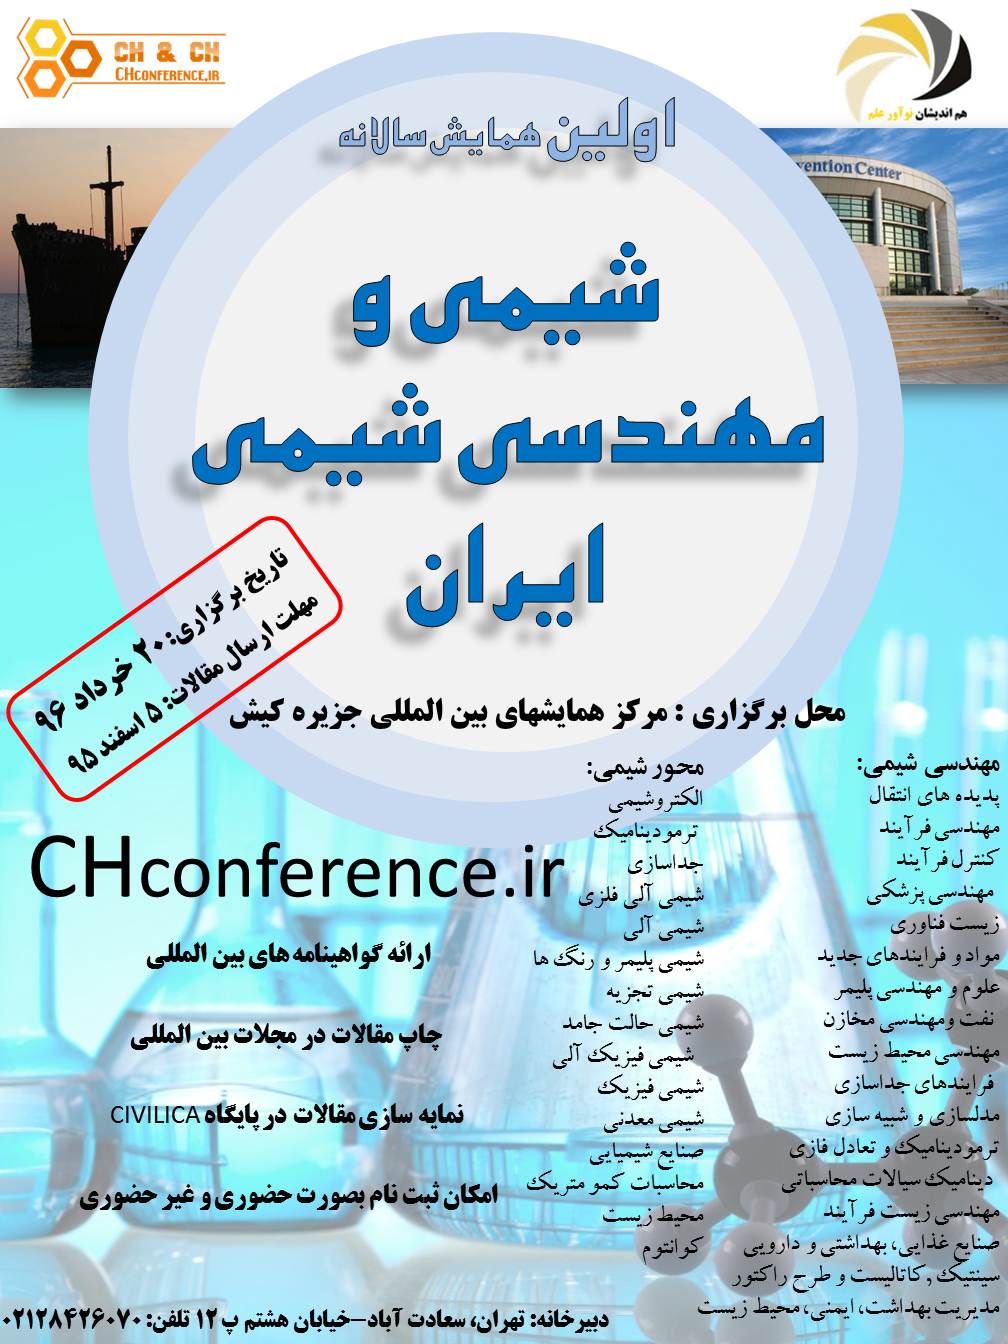 پوستر اولین همایش سالانه شیمی و مهندسی شیمی ایران